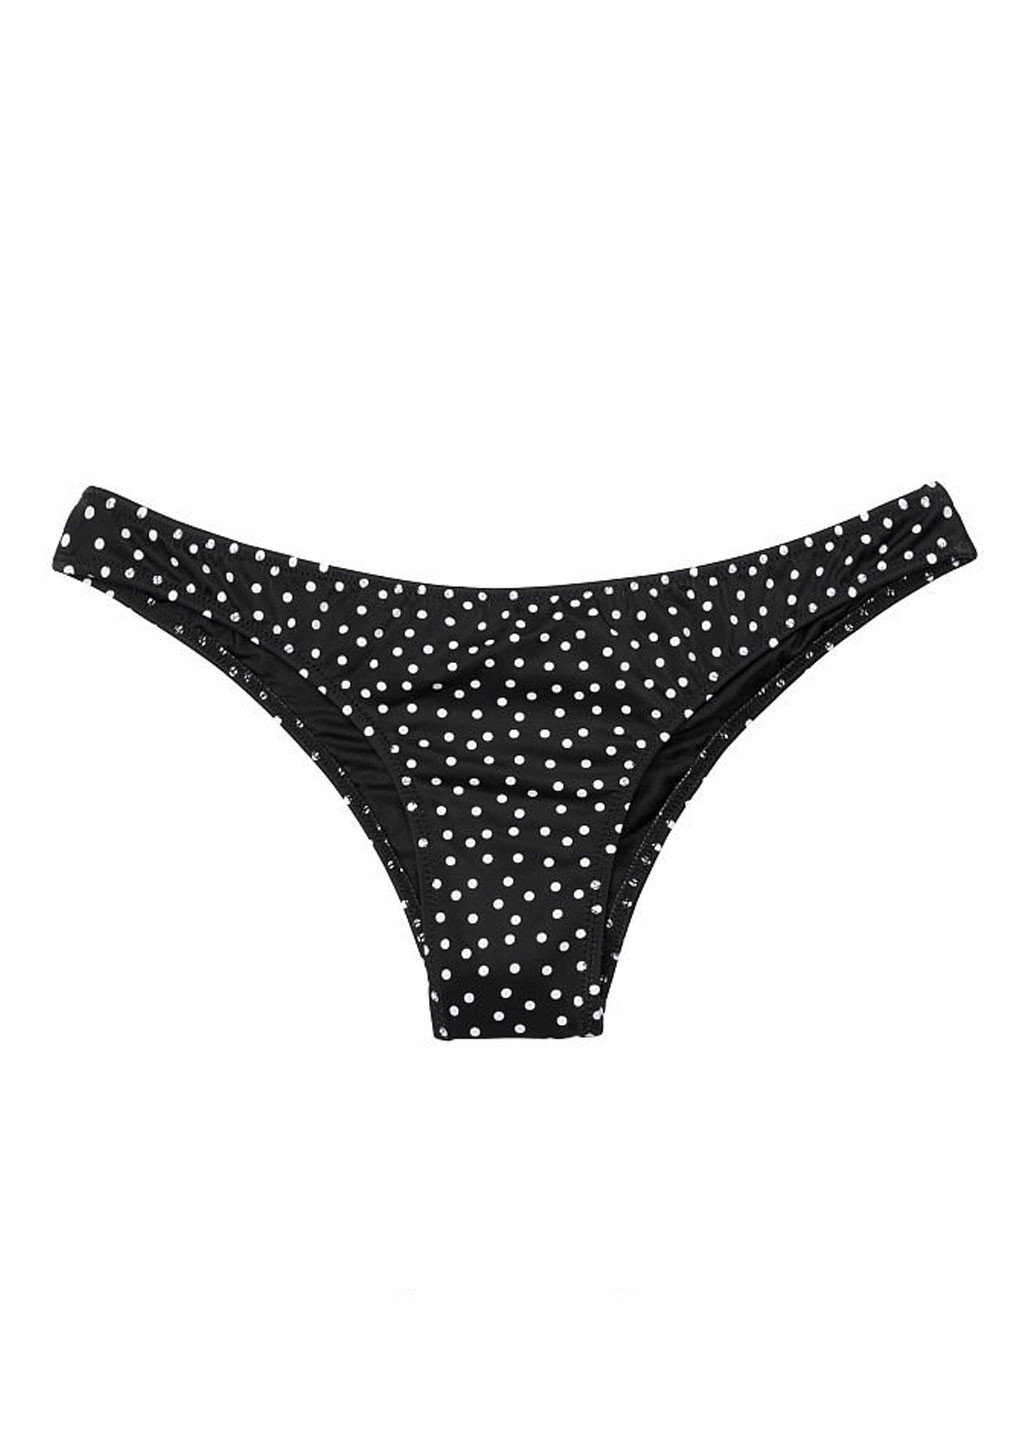 Чорно-білий літній купальник (ліф, труси) бікіні, роздільний Victoria's Secret